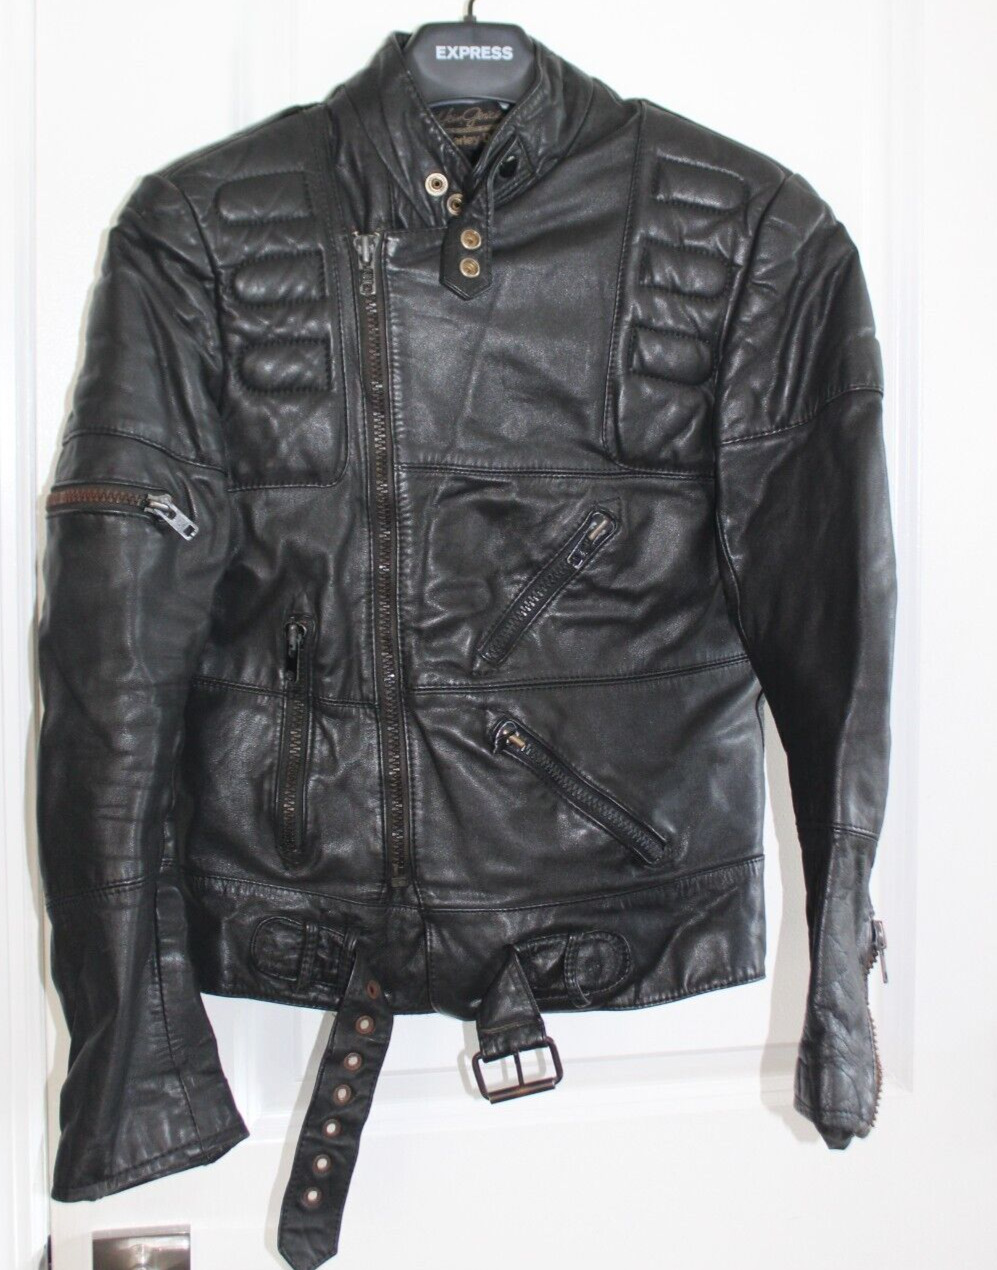 Harley- Davidson Vintage Black Leather Belted Biker Jacket Coat Men's 48 Regular